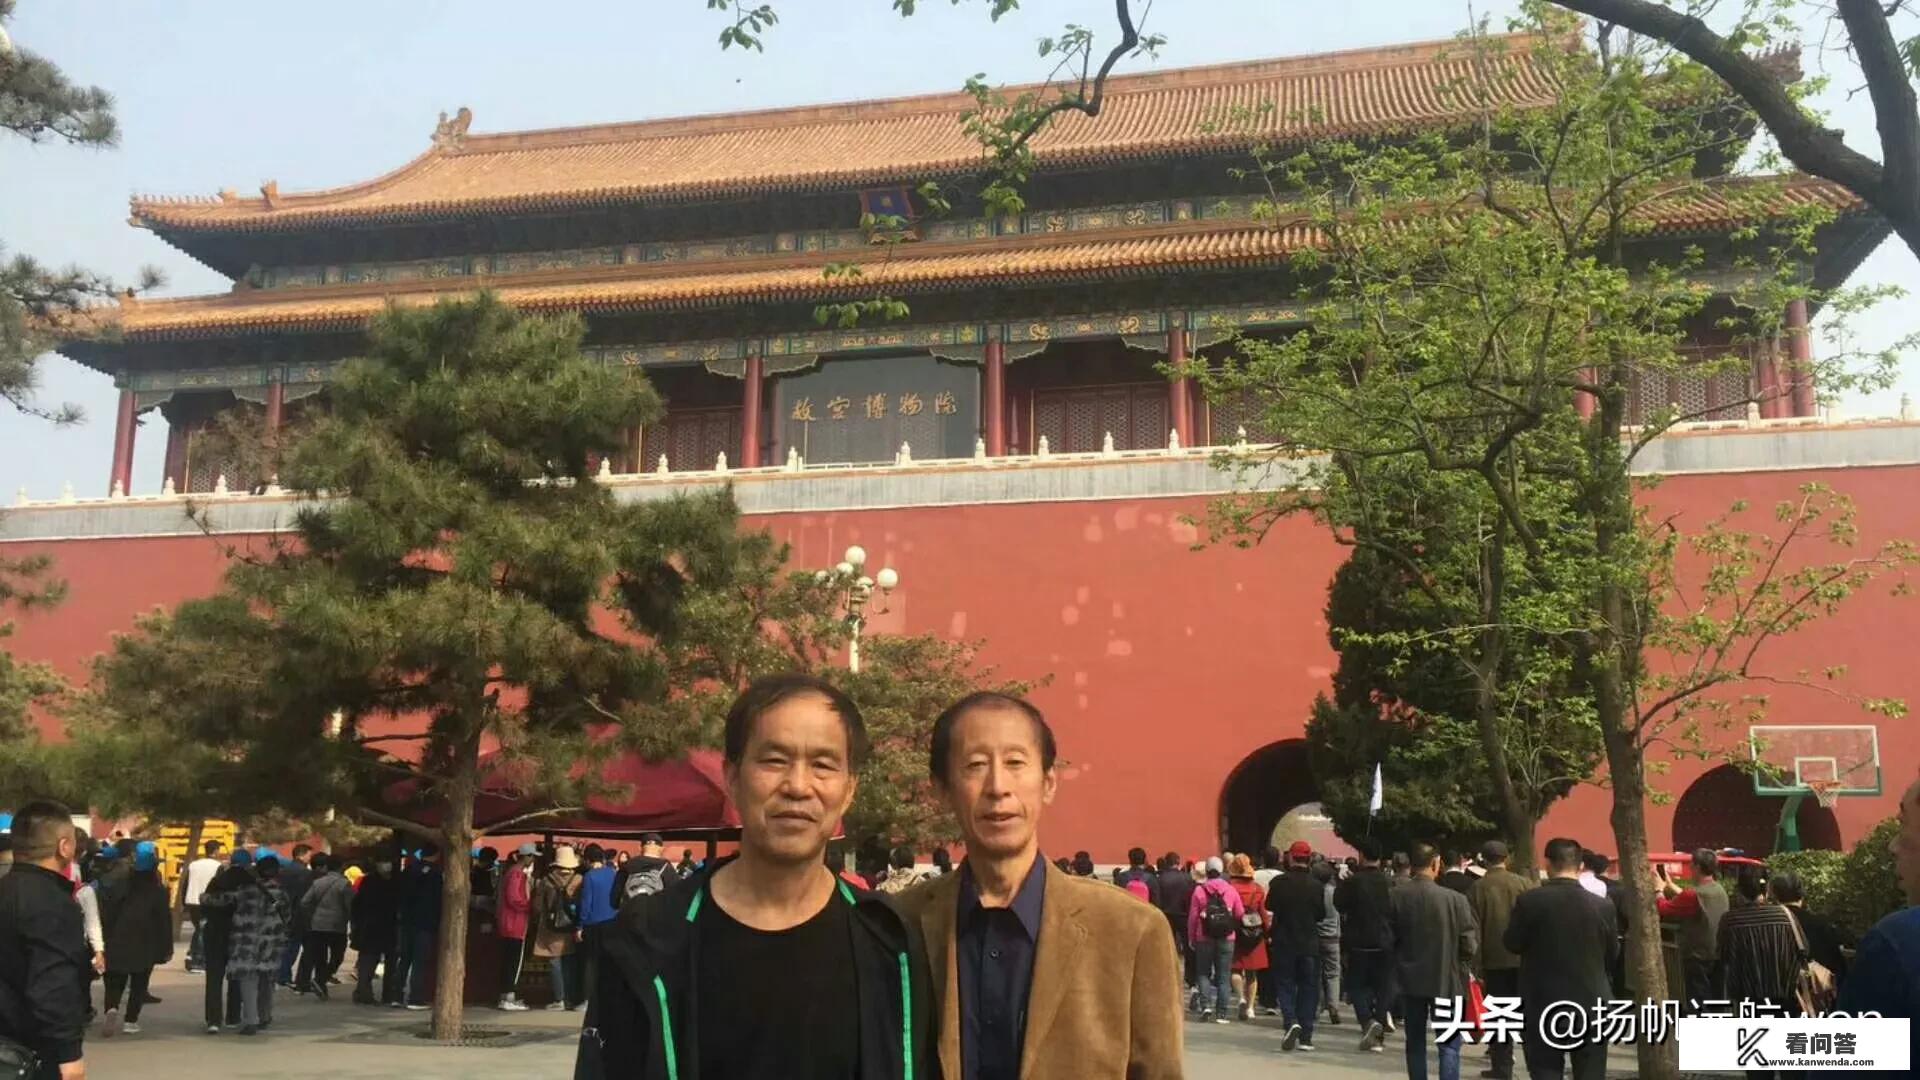 请教去北京旅游第一站应该去紫禁城吗？哪里很美吗？